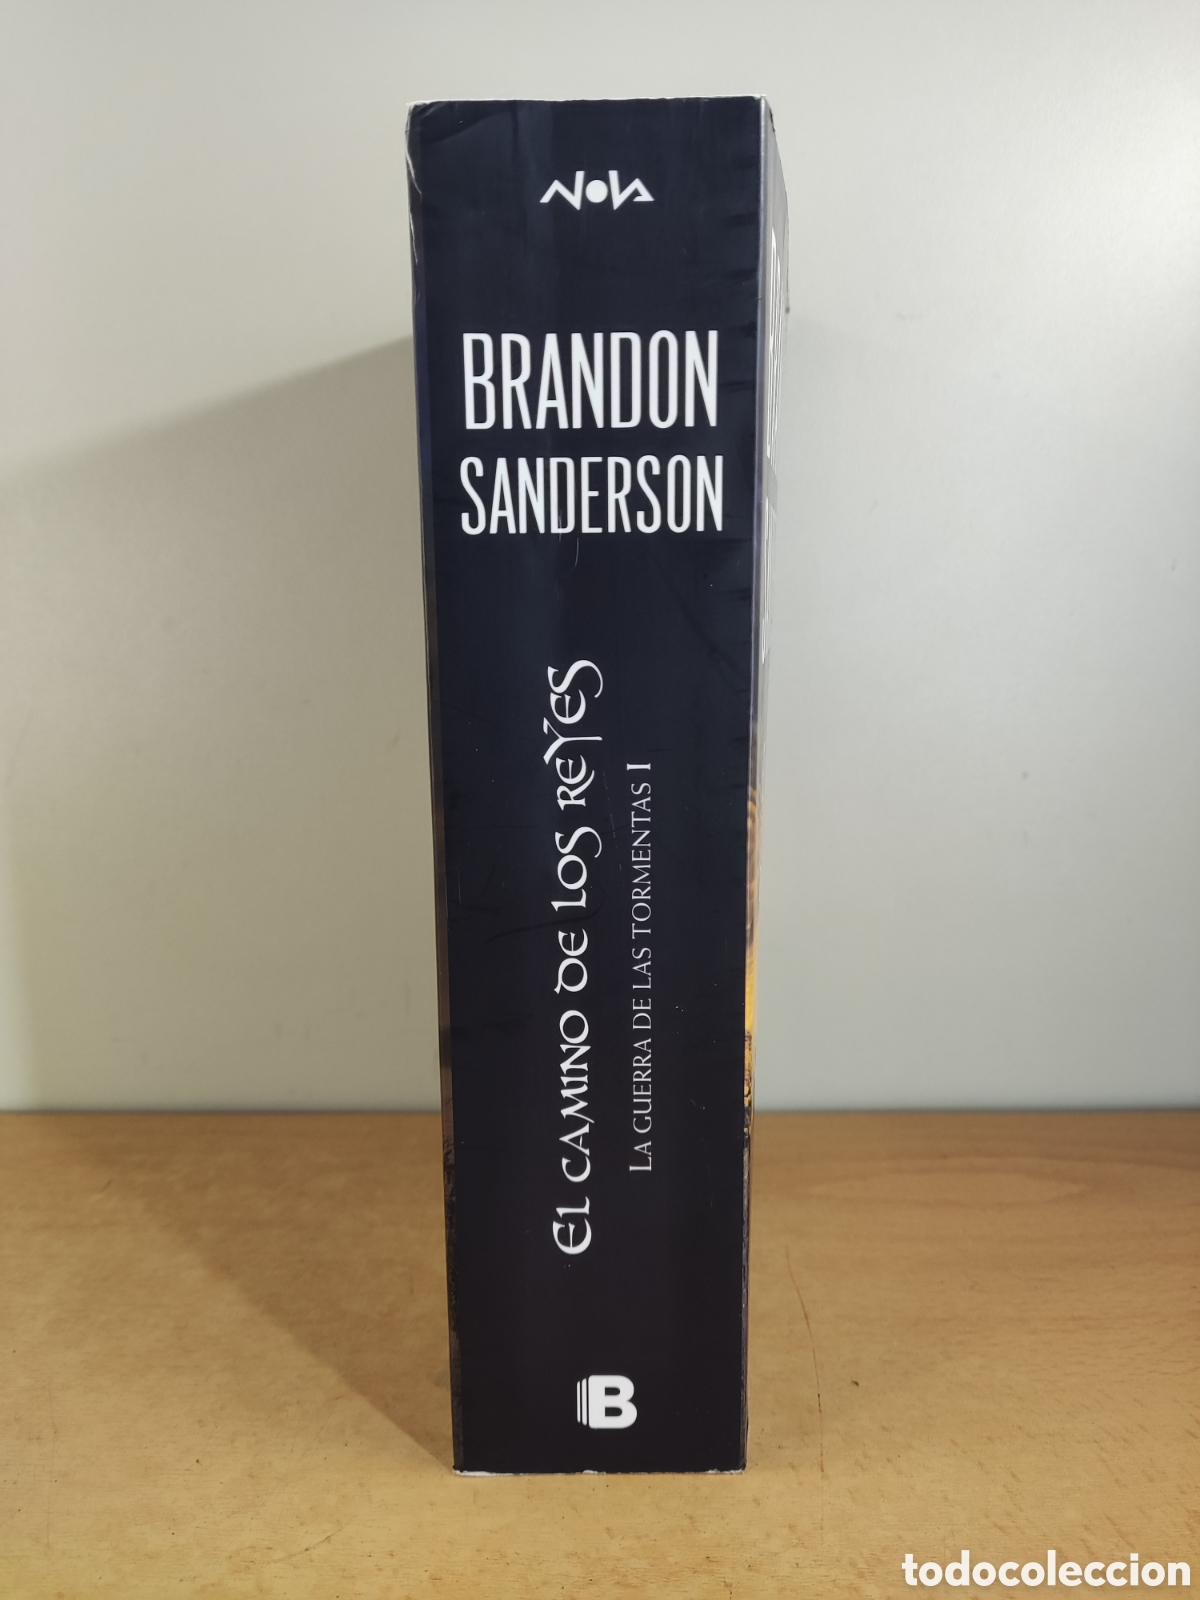 el imperio final brandon sanderson nacidos de l - Buy Used science fiction  and fantasy books on todocoleccion